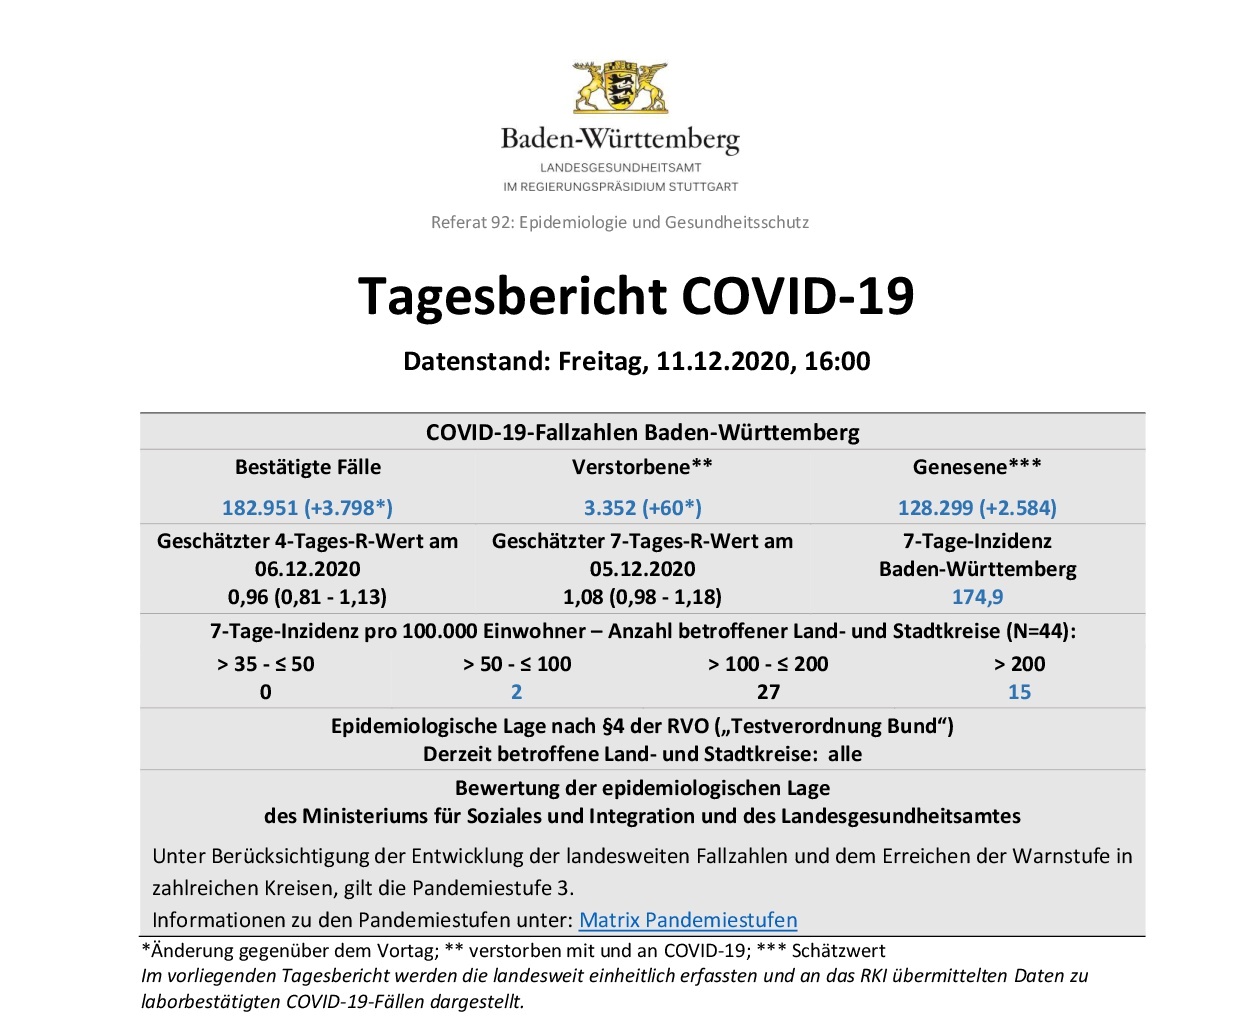 COVID-19 Tagesbericht (11.12.2020) des Landesgesundheitsamts Baden-Württemberg – (ausführlich)